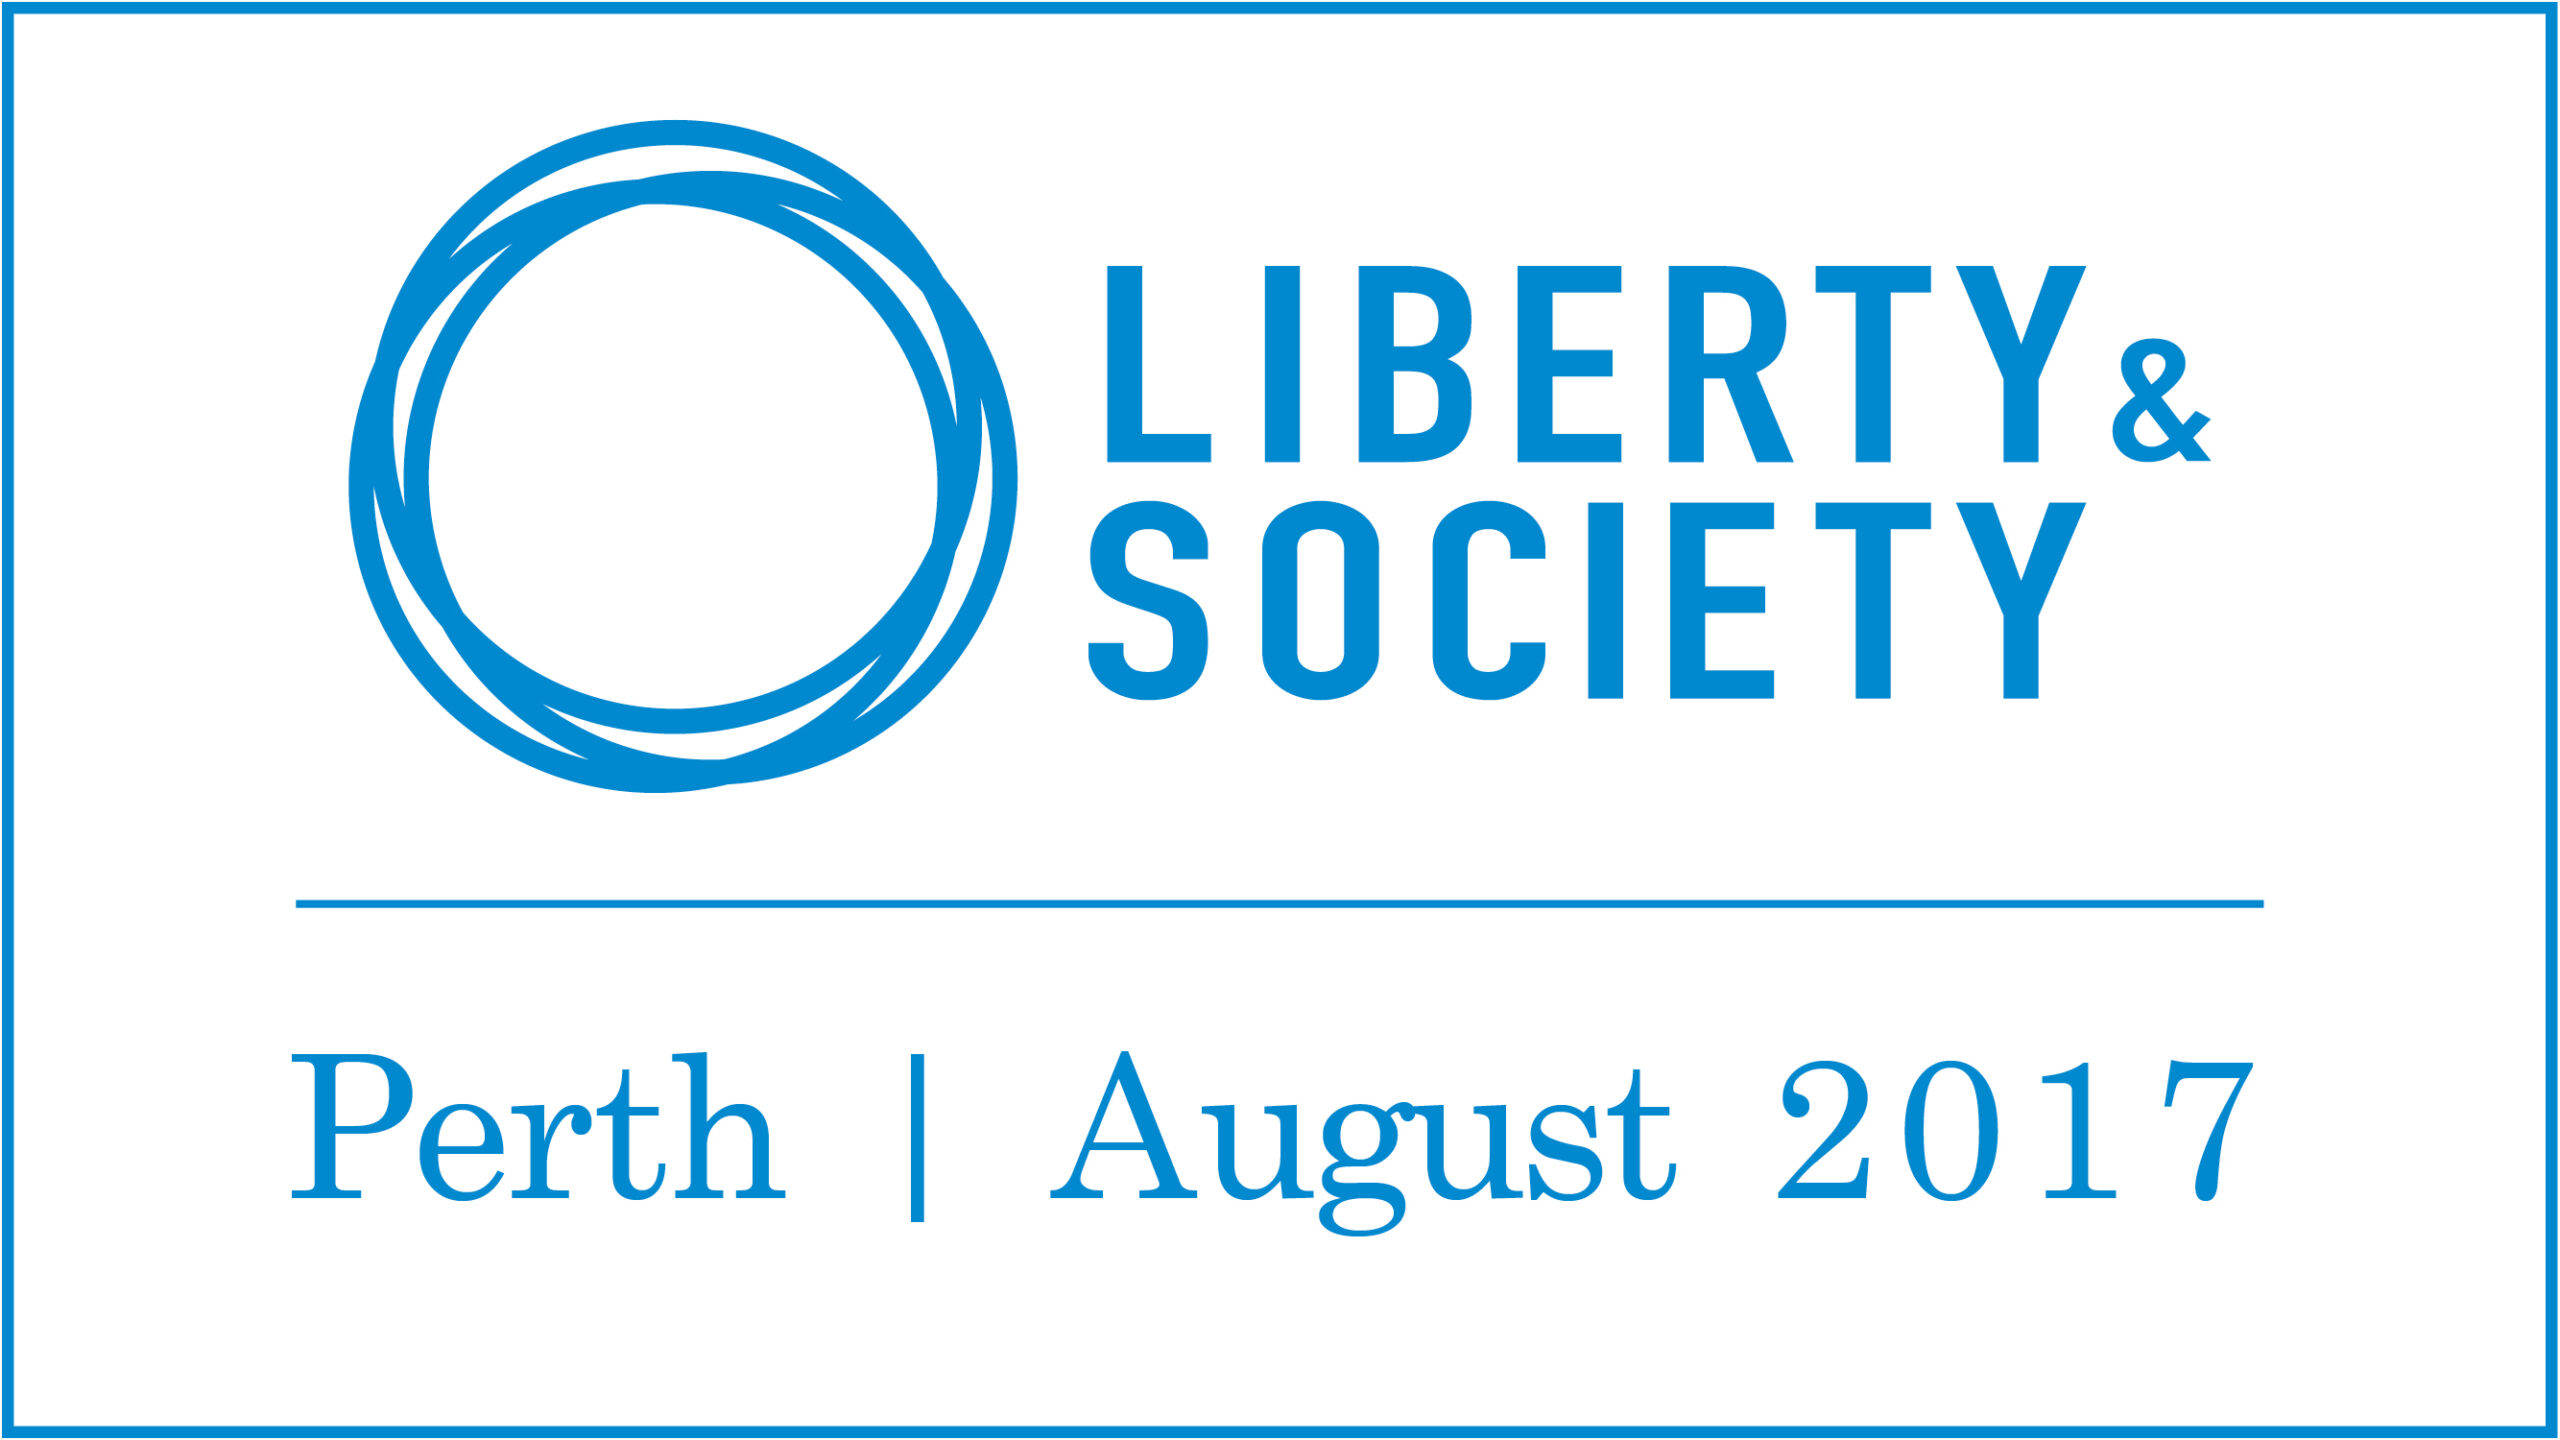 Liberty & Society 2017 | Perth